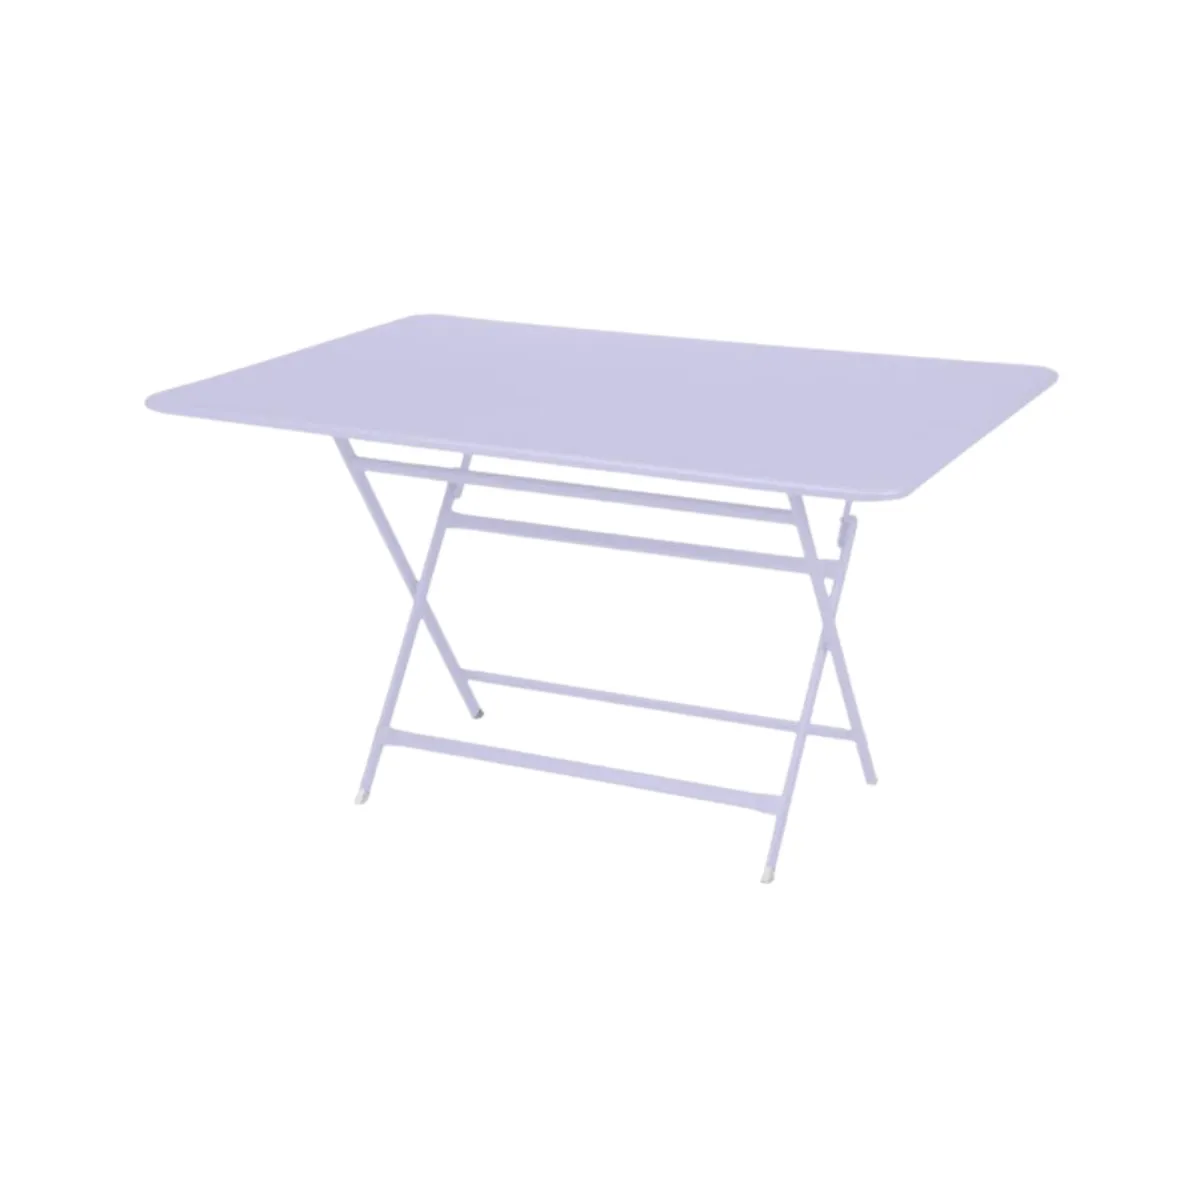 Caractere rectangular folding table 7